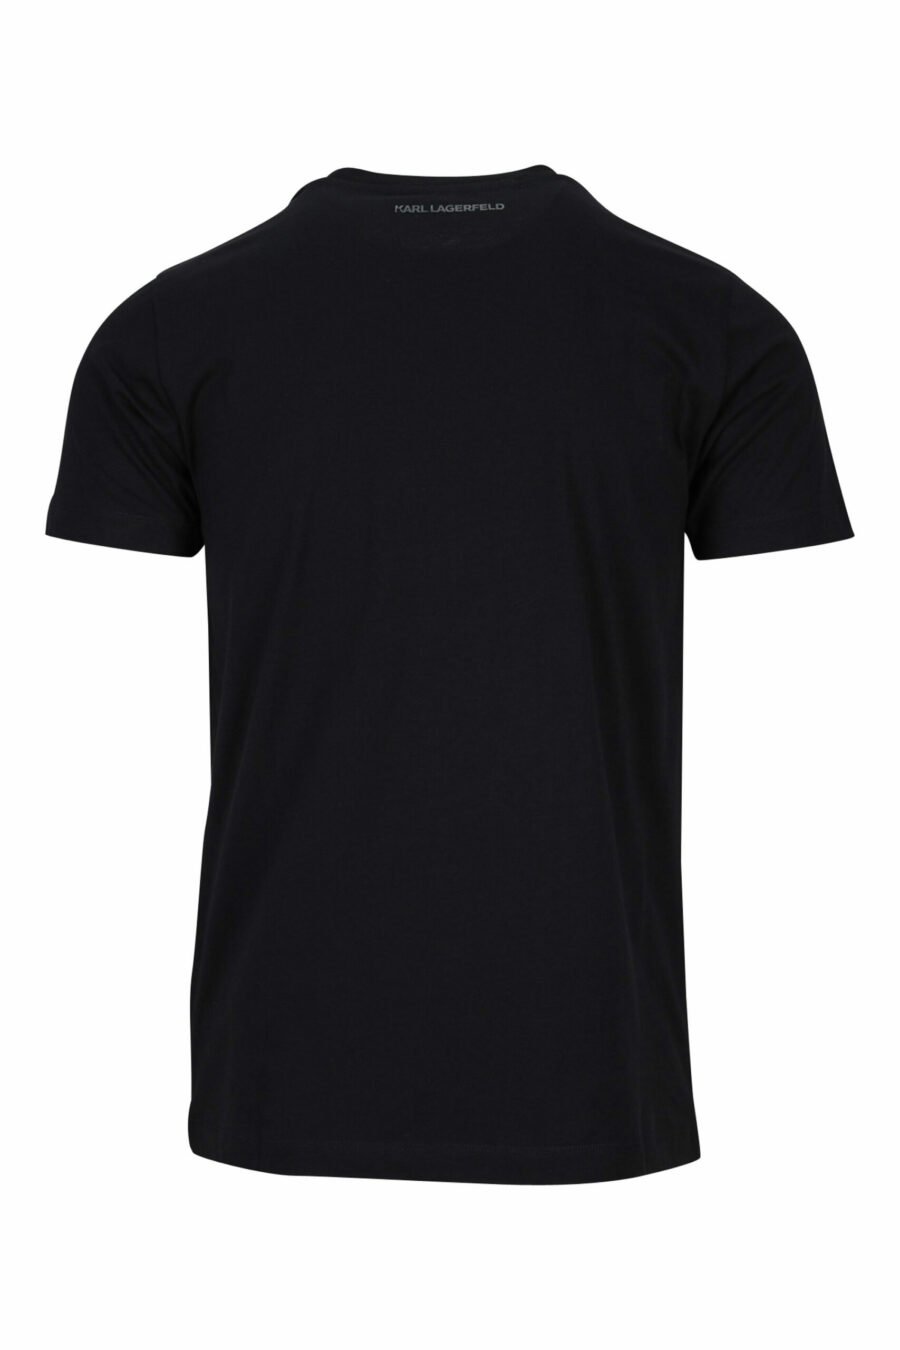 Schwarzes T-Shirt mit einfarbigem Gummi-Maxilogo - 4062226679480 1 skaliert